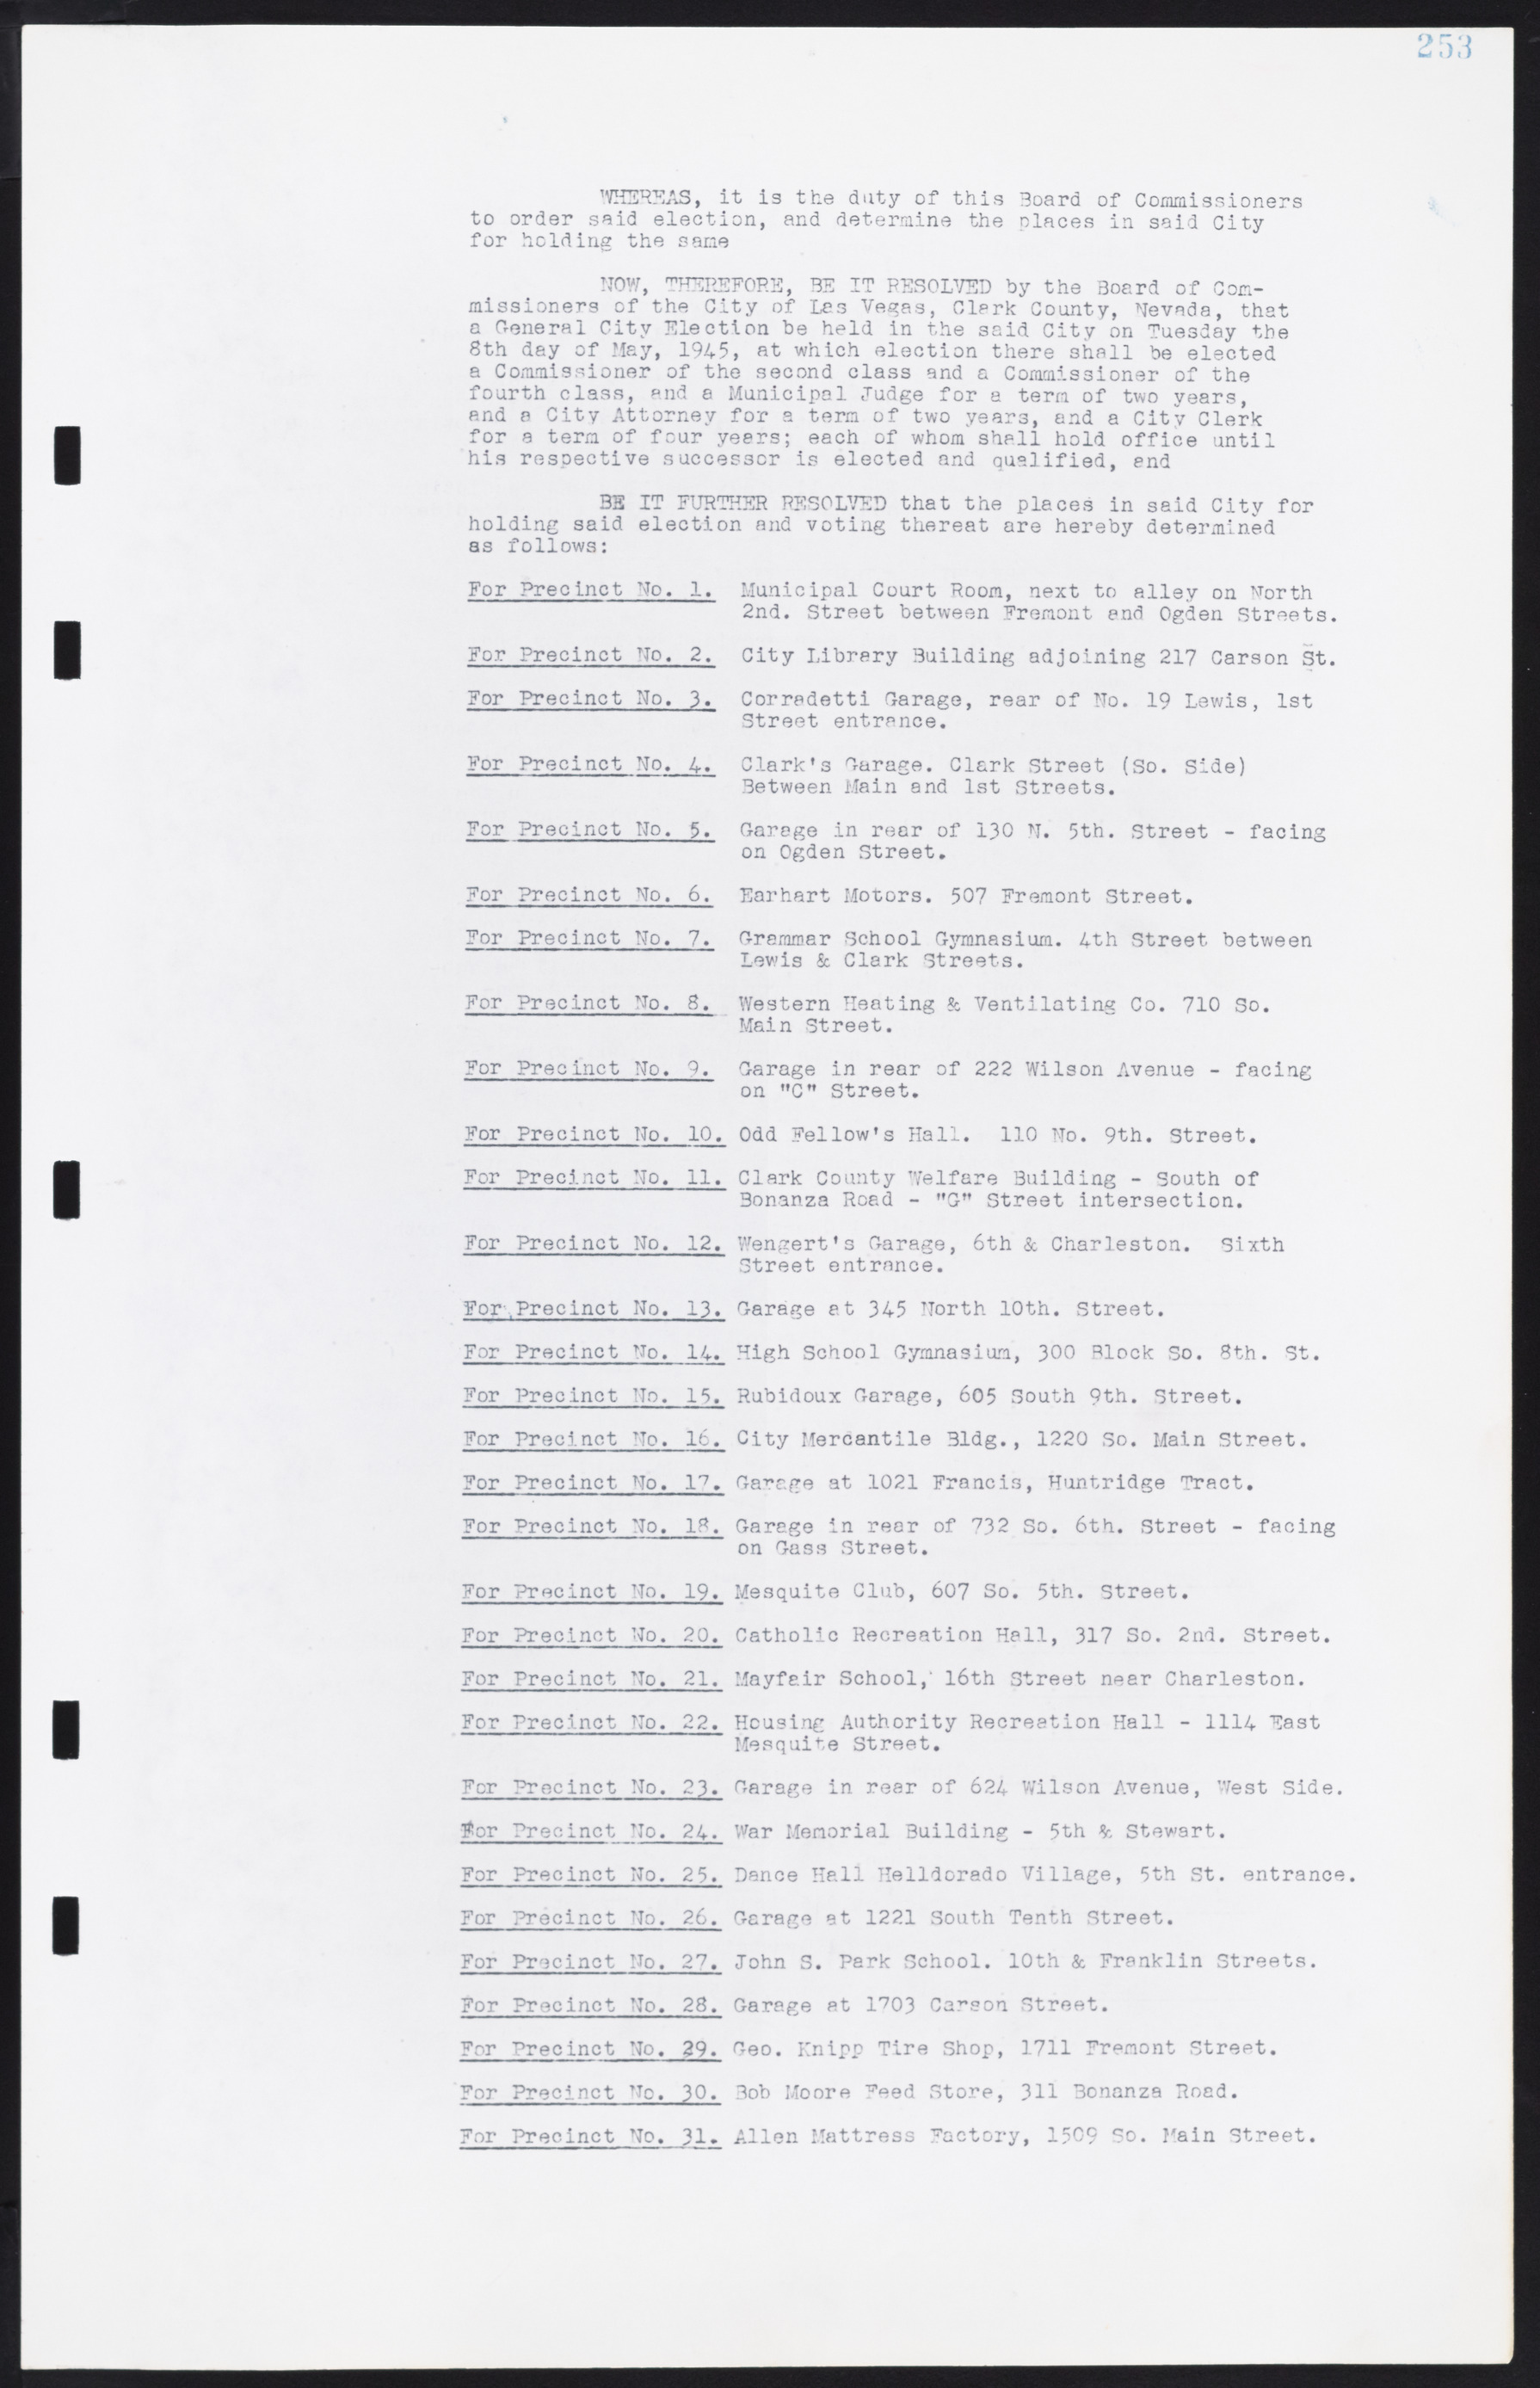 Las Vegas City Commission Minutes, August 11, 1942 to December 30, 1946, lvc000005-275